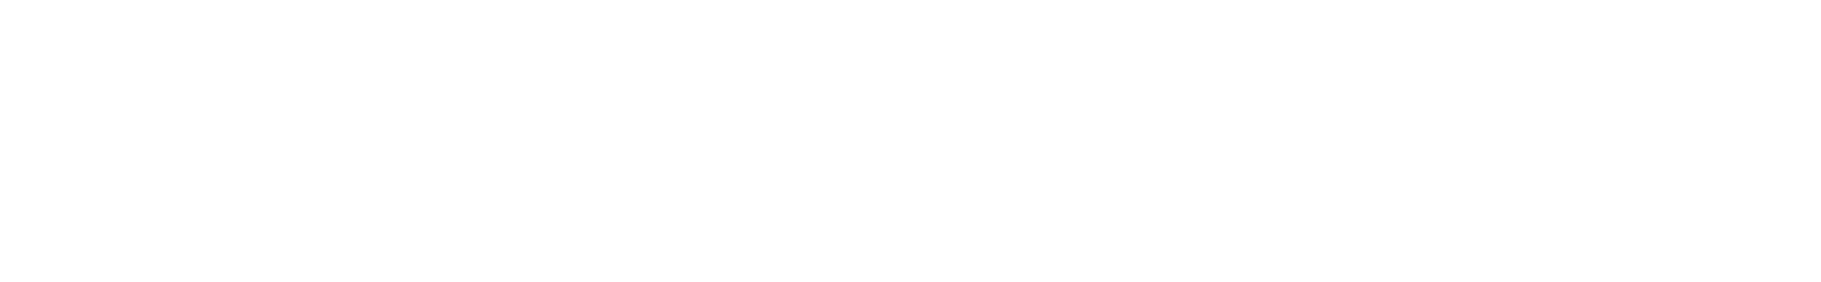 中国社会扶贫网